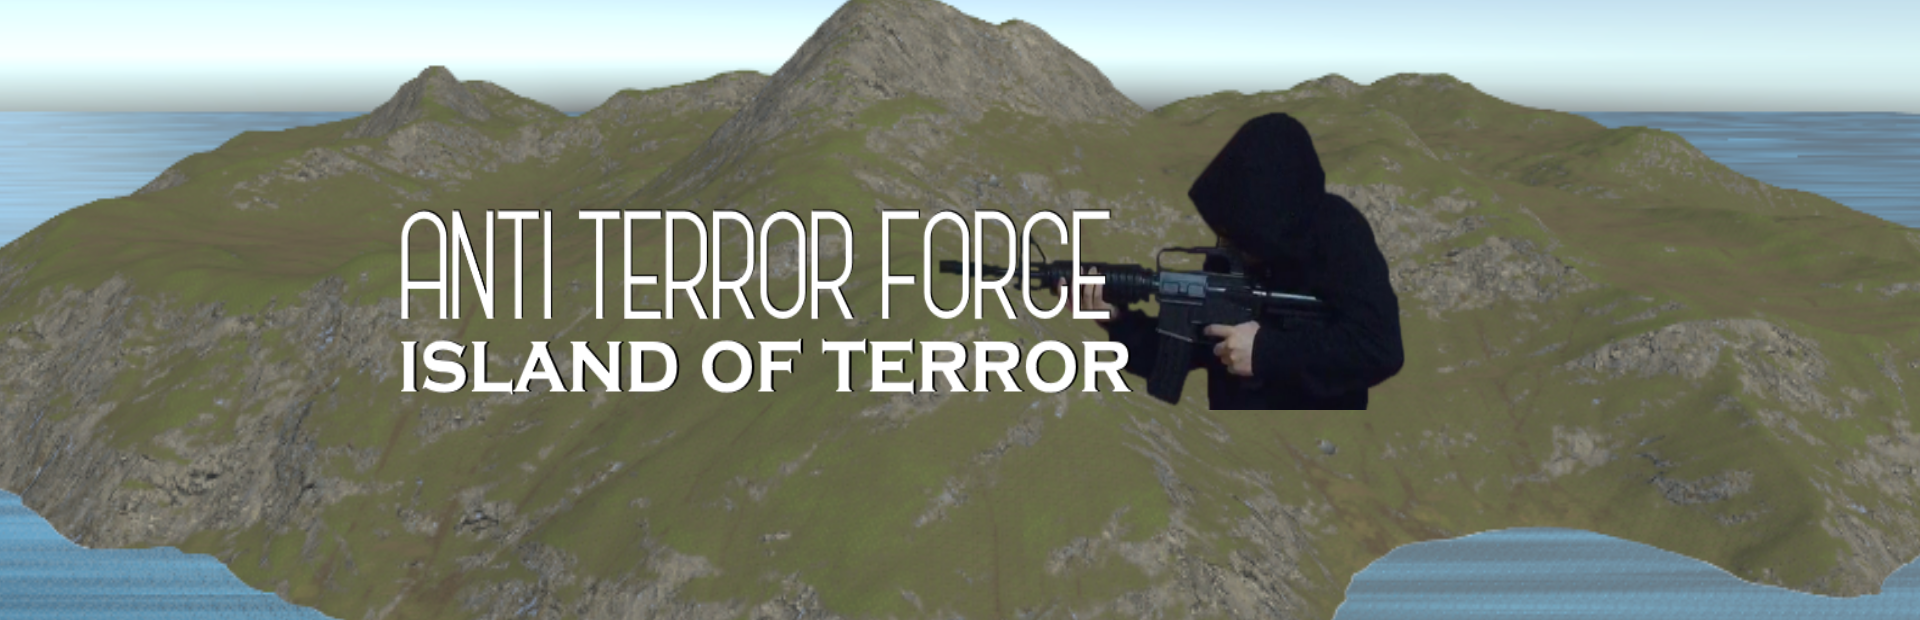 Anti-Terror Force - Island of Terror